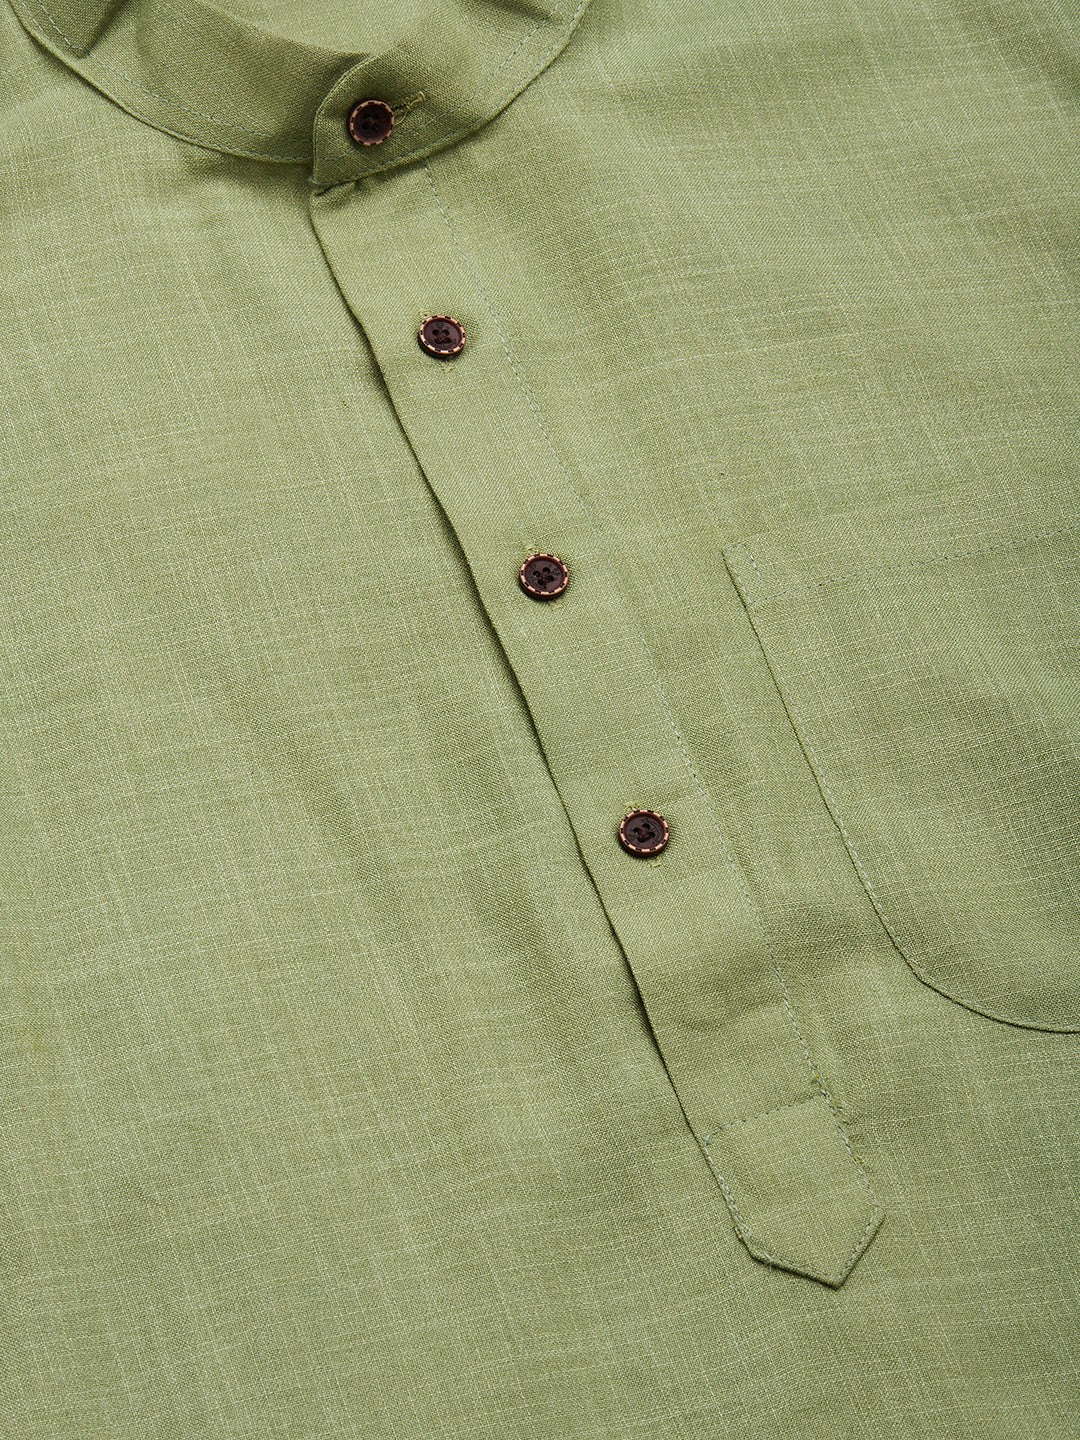 Jompers Men's Pista Cotton Solid Kurta Pyjama ( JOKP 532 Pista )